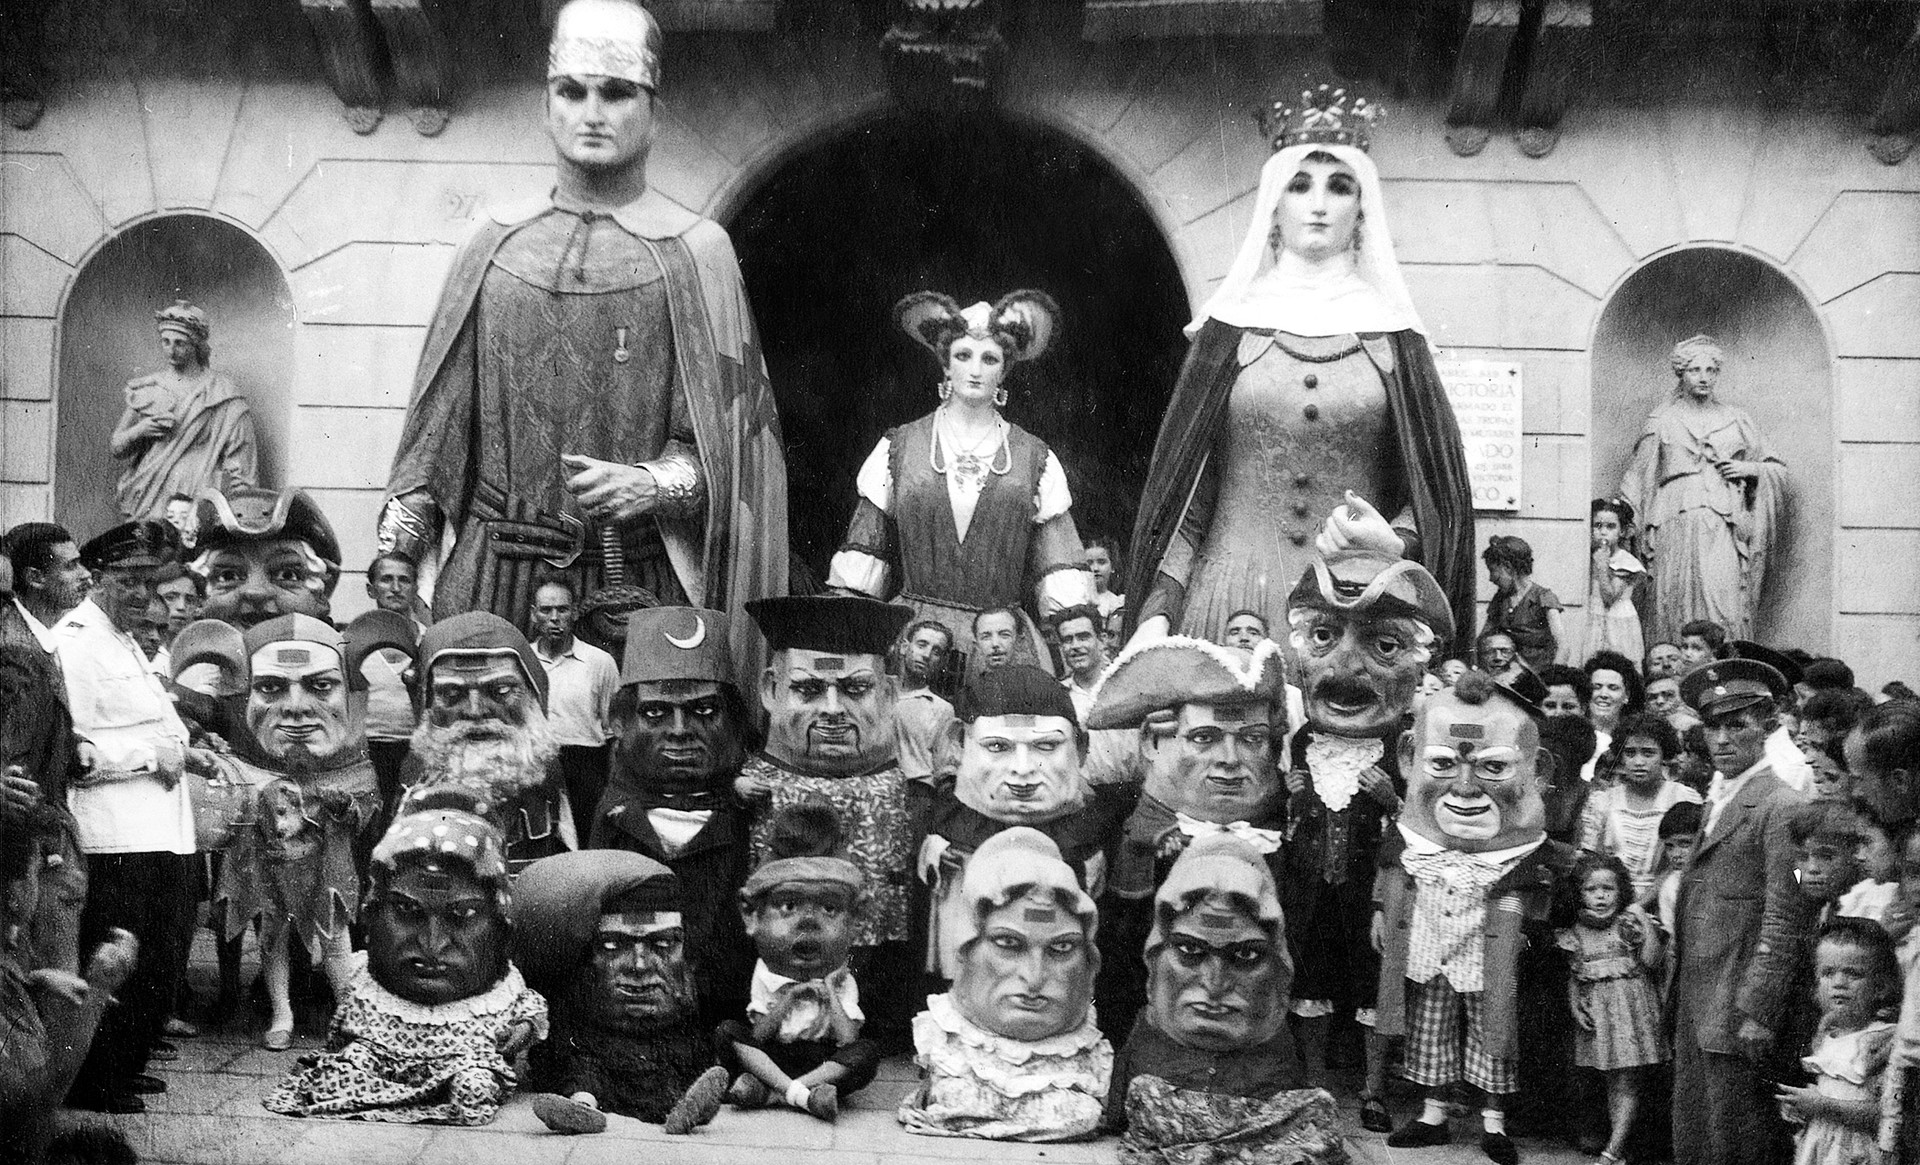 Els gegants i nans, davant l’Ajuntament. Autor desconegut (c. 1940). Arxiu Municipal de Mataró. Fons fotogràfic l’Abans-Mataró